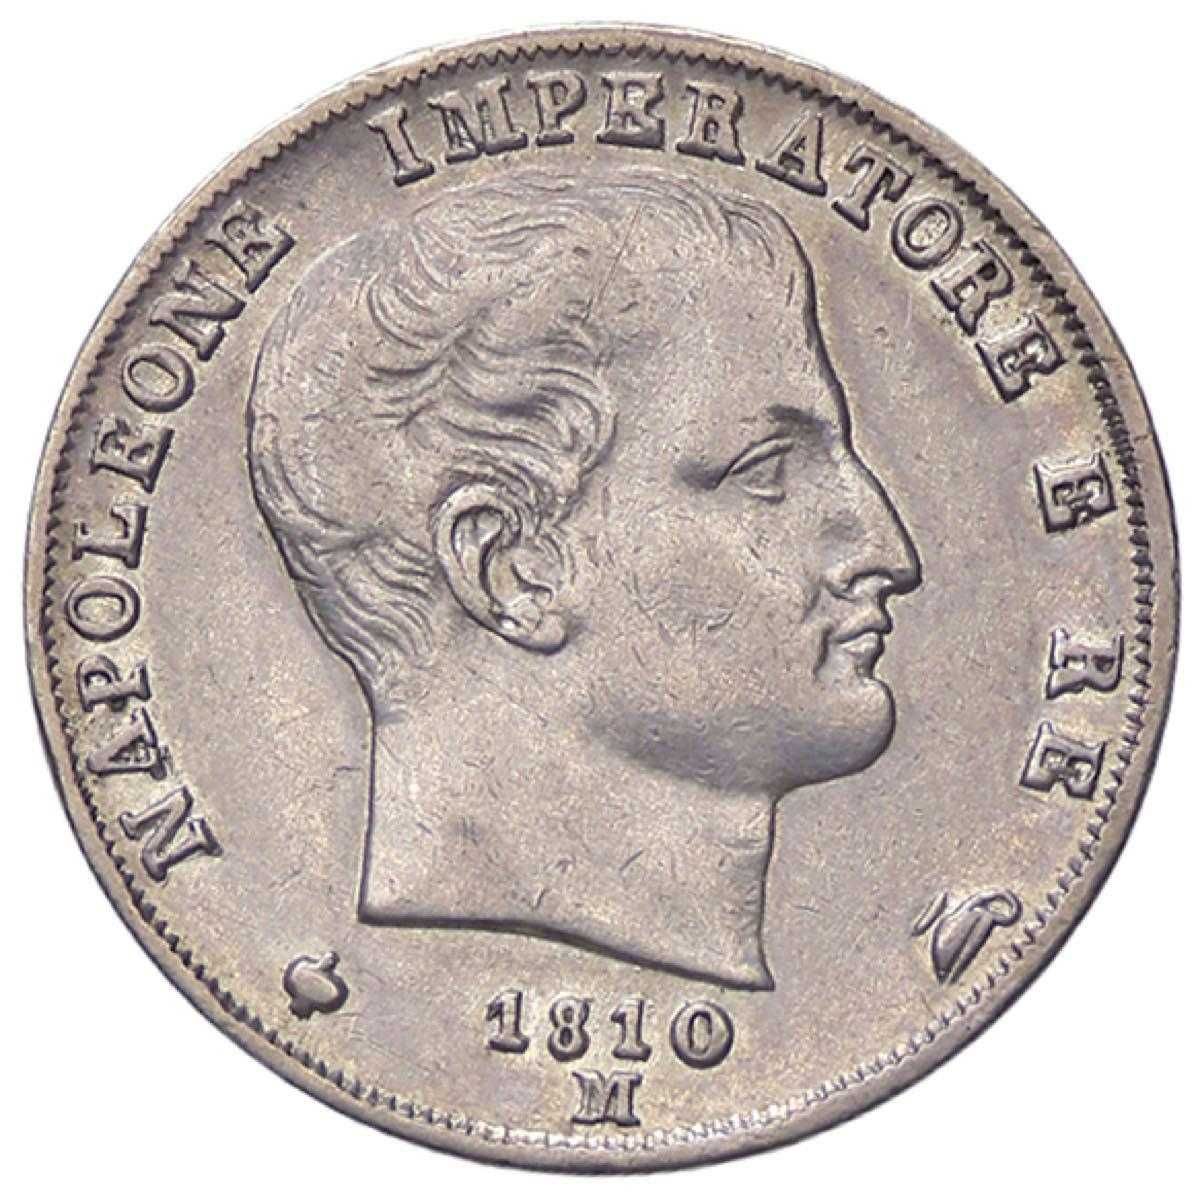 Napoleon I 1 Lira Włochy 1810 M